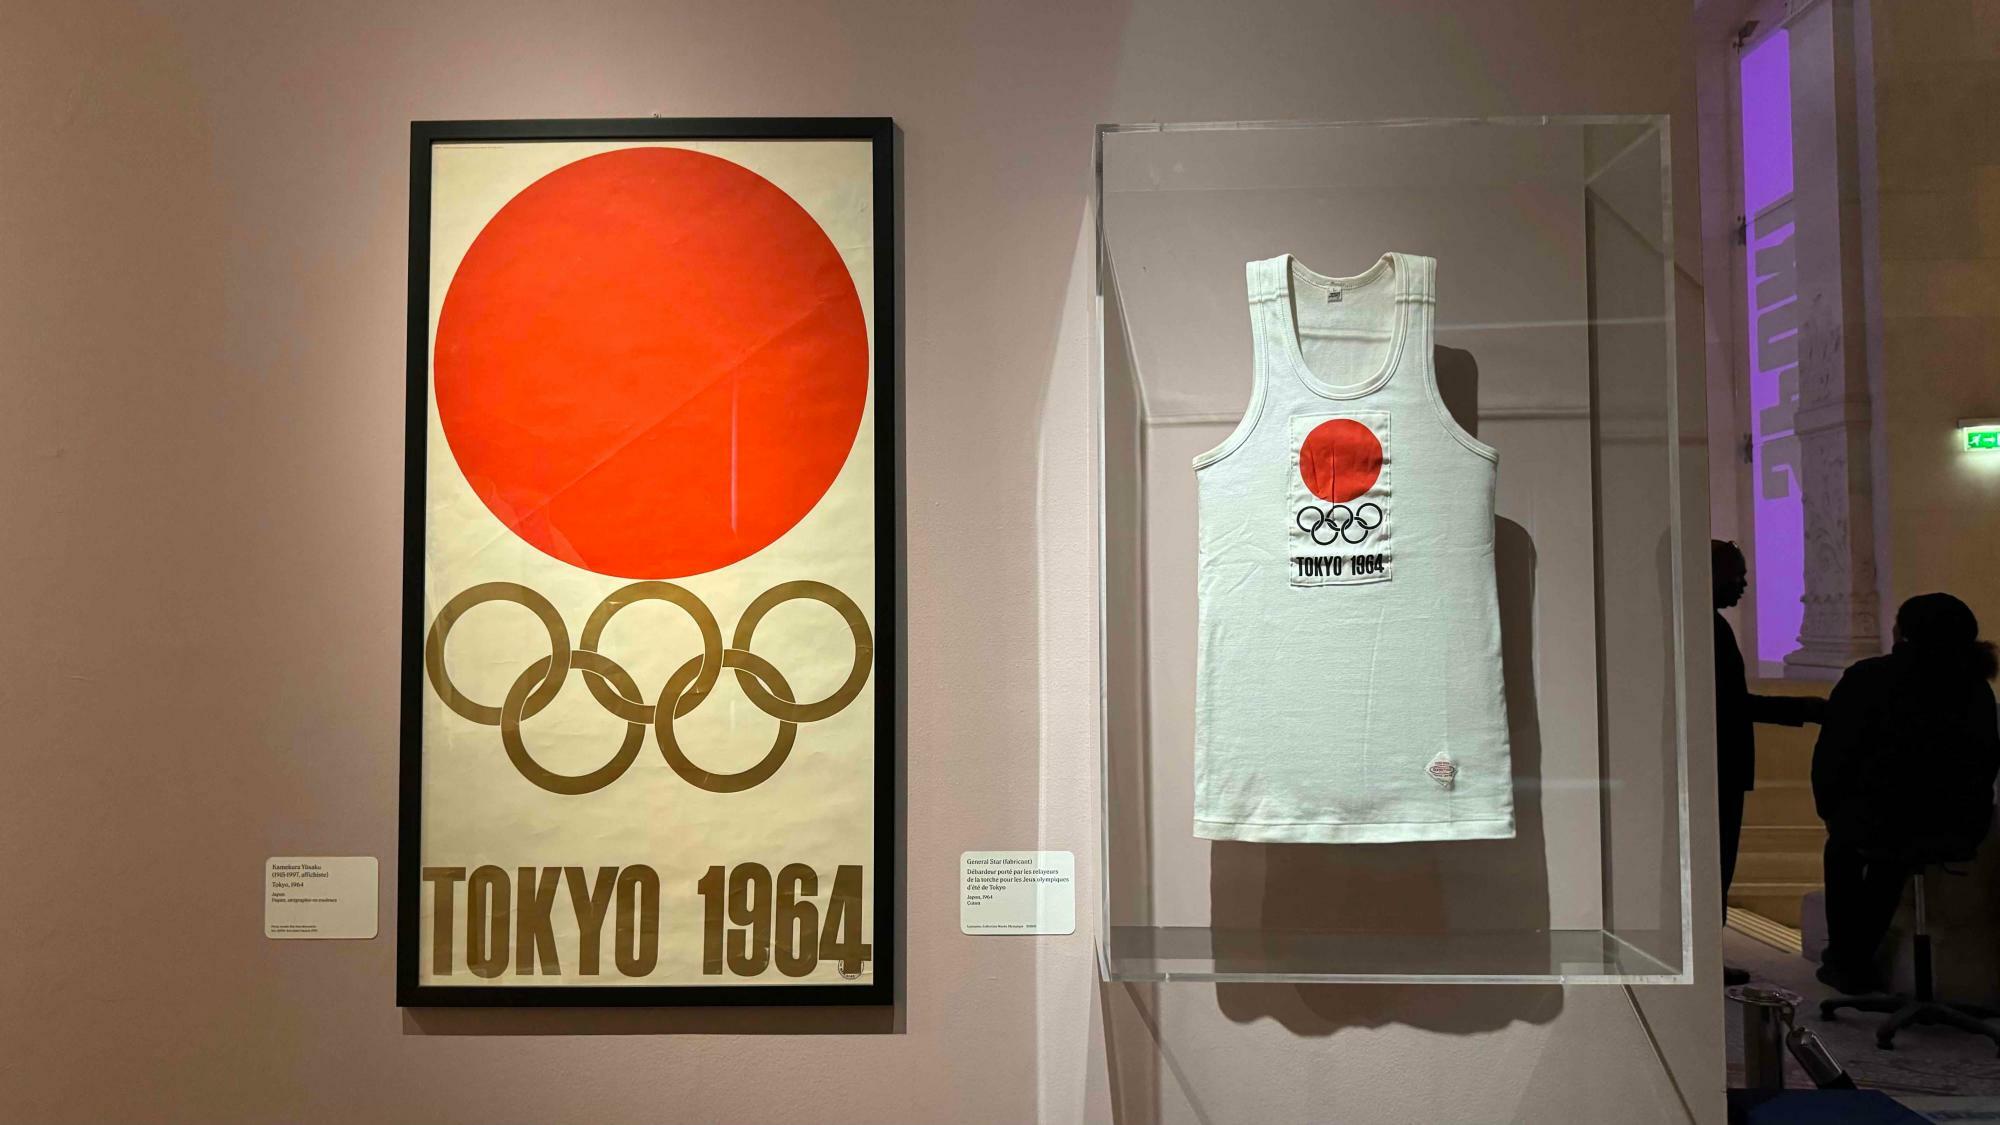 1964年東京オリンピック、聖火リレーの最終ランナーが着用していたウエア